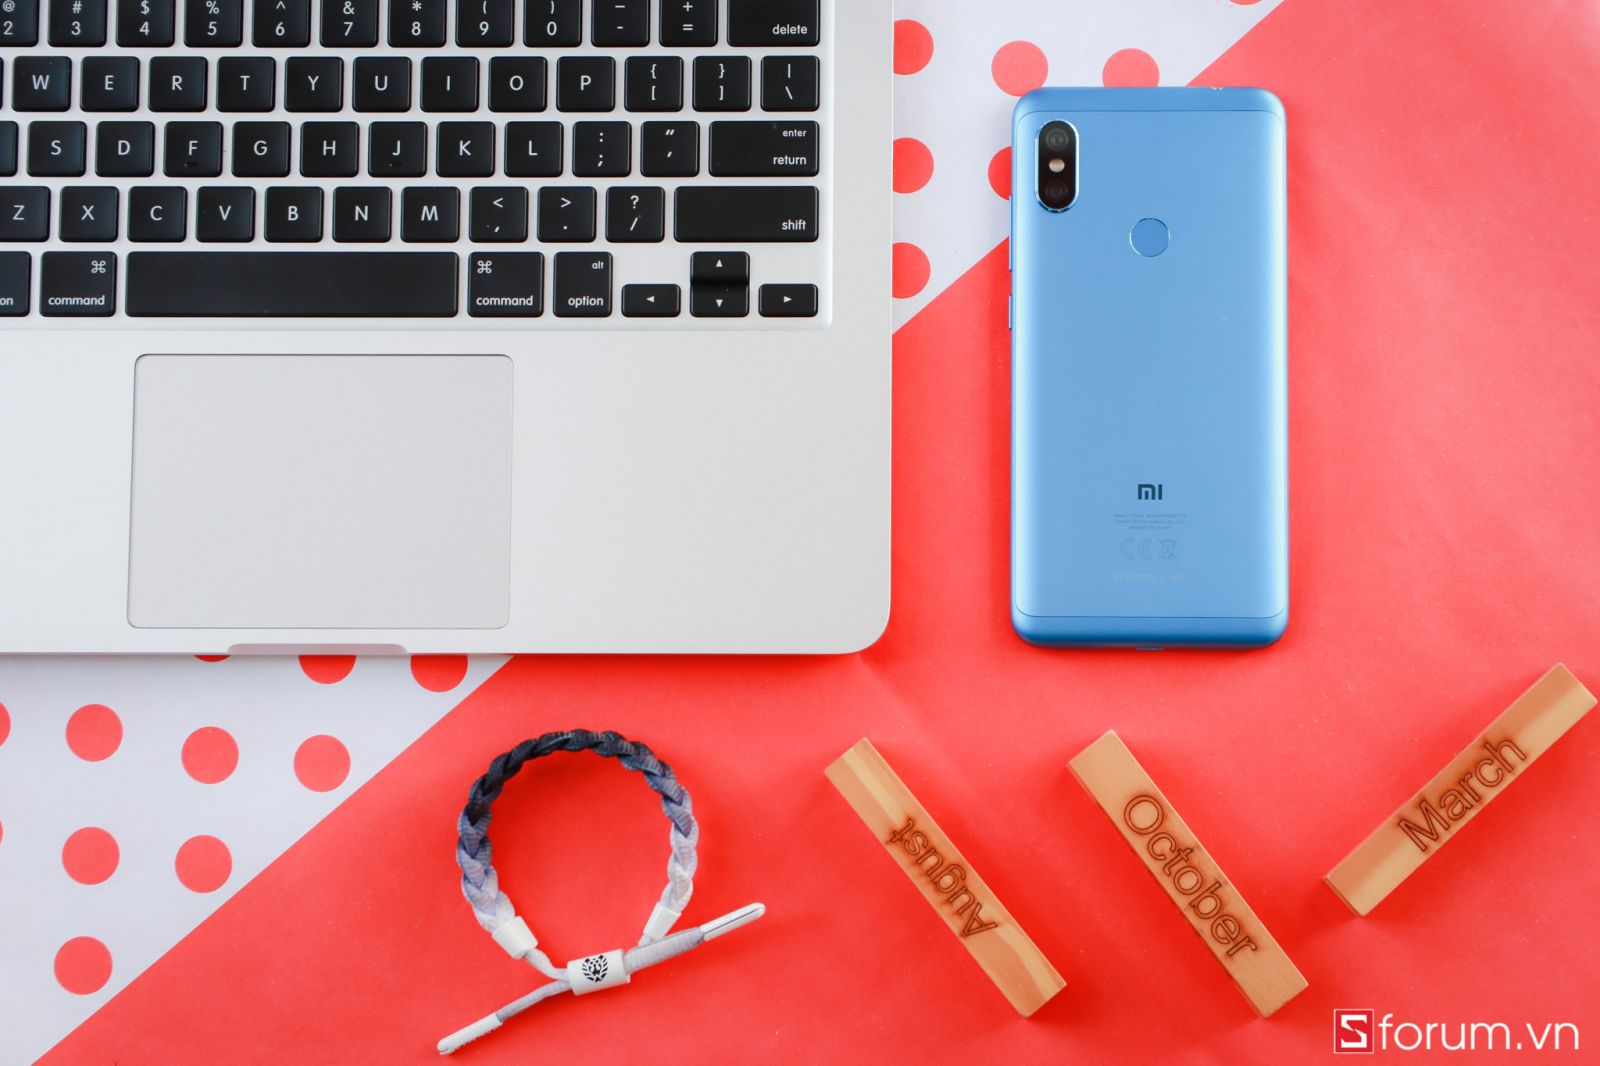 Xiaomi Redmi Note 6 Pro mới được nâng cấp những gì so với người đàn anh tiền nhiệm?